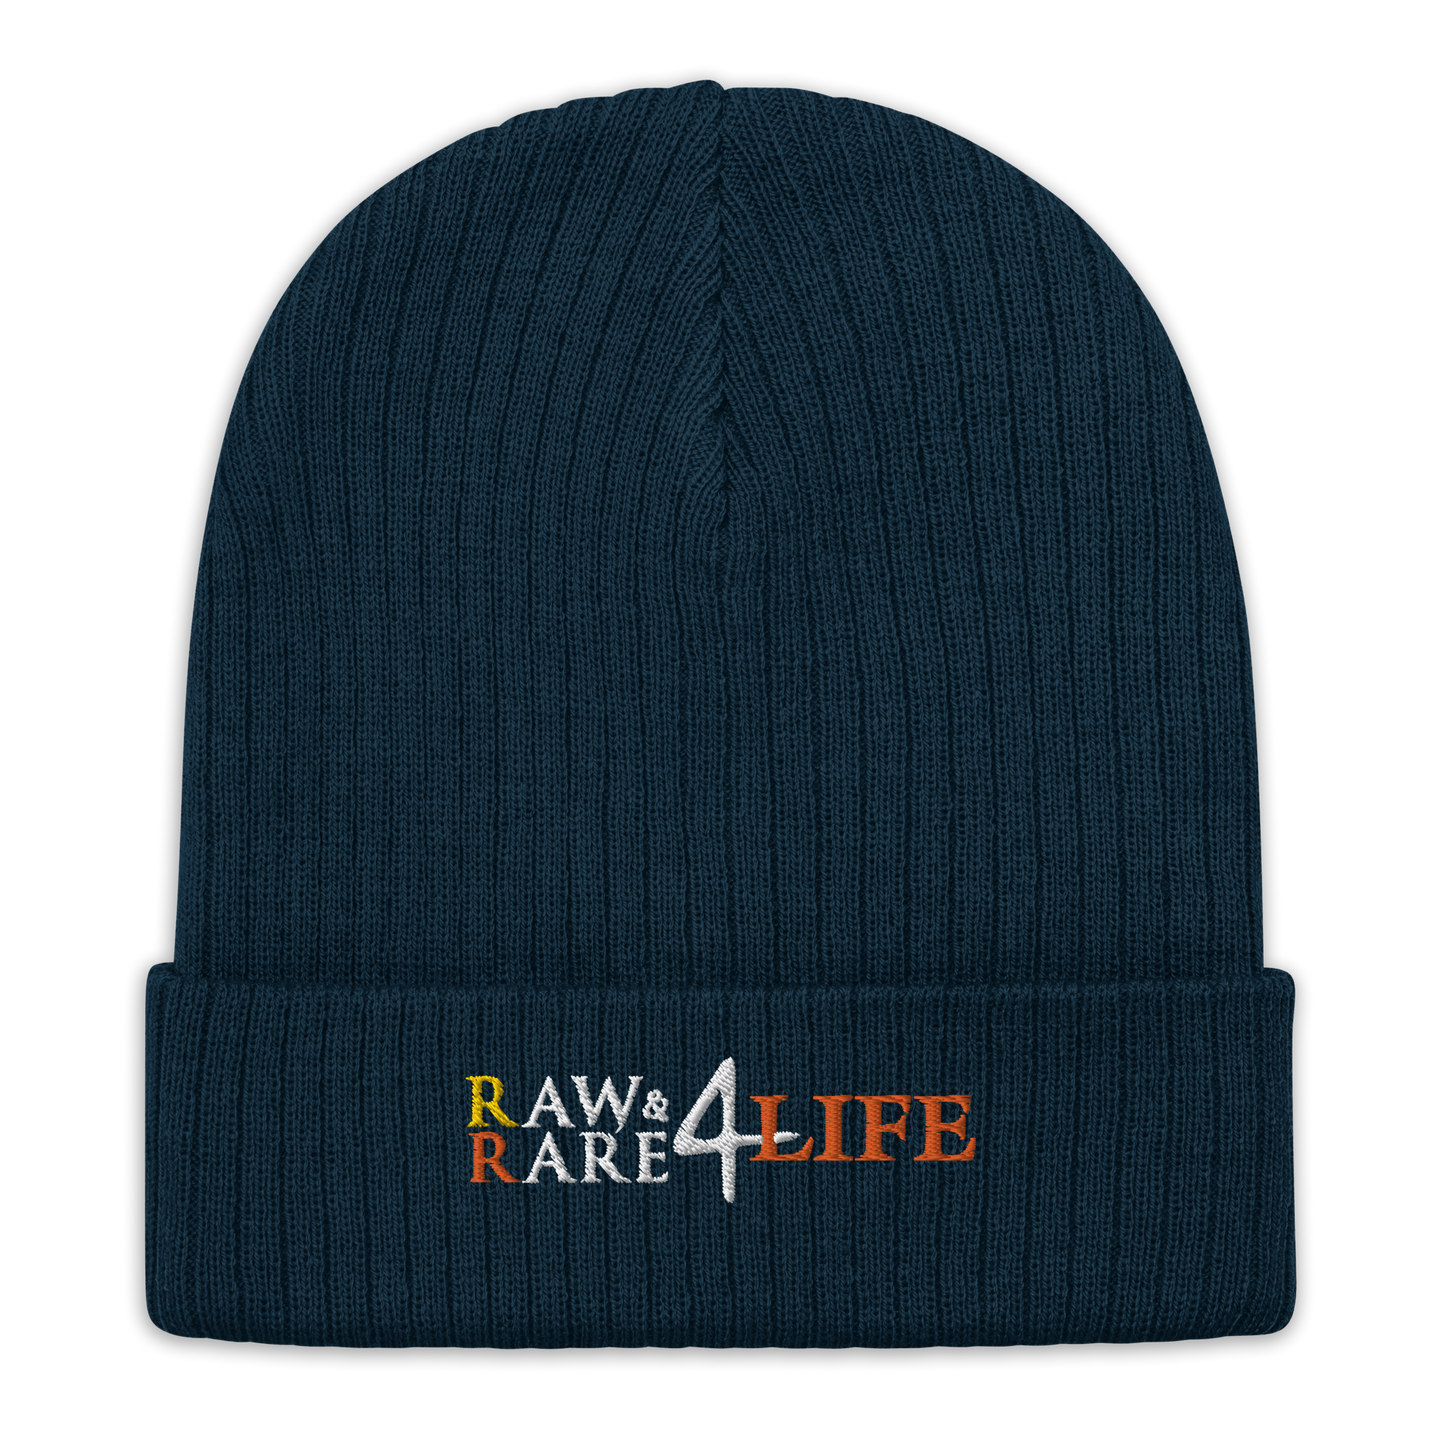 Raw & Rare 4 life Ribbed Beanie